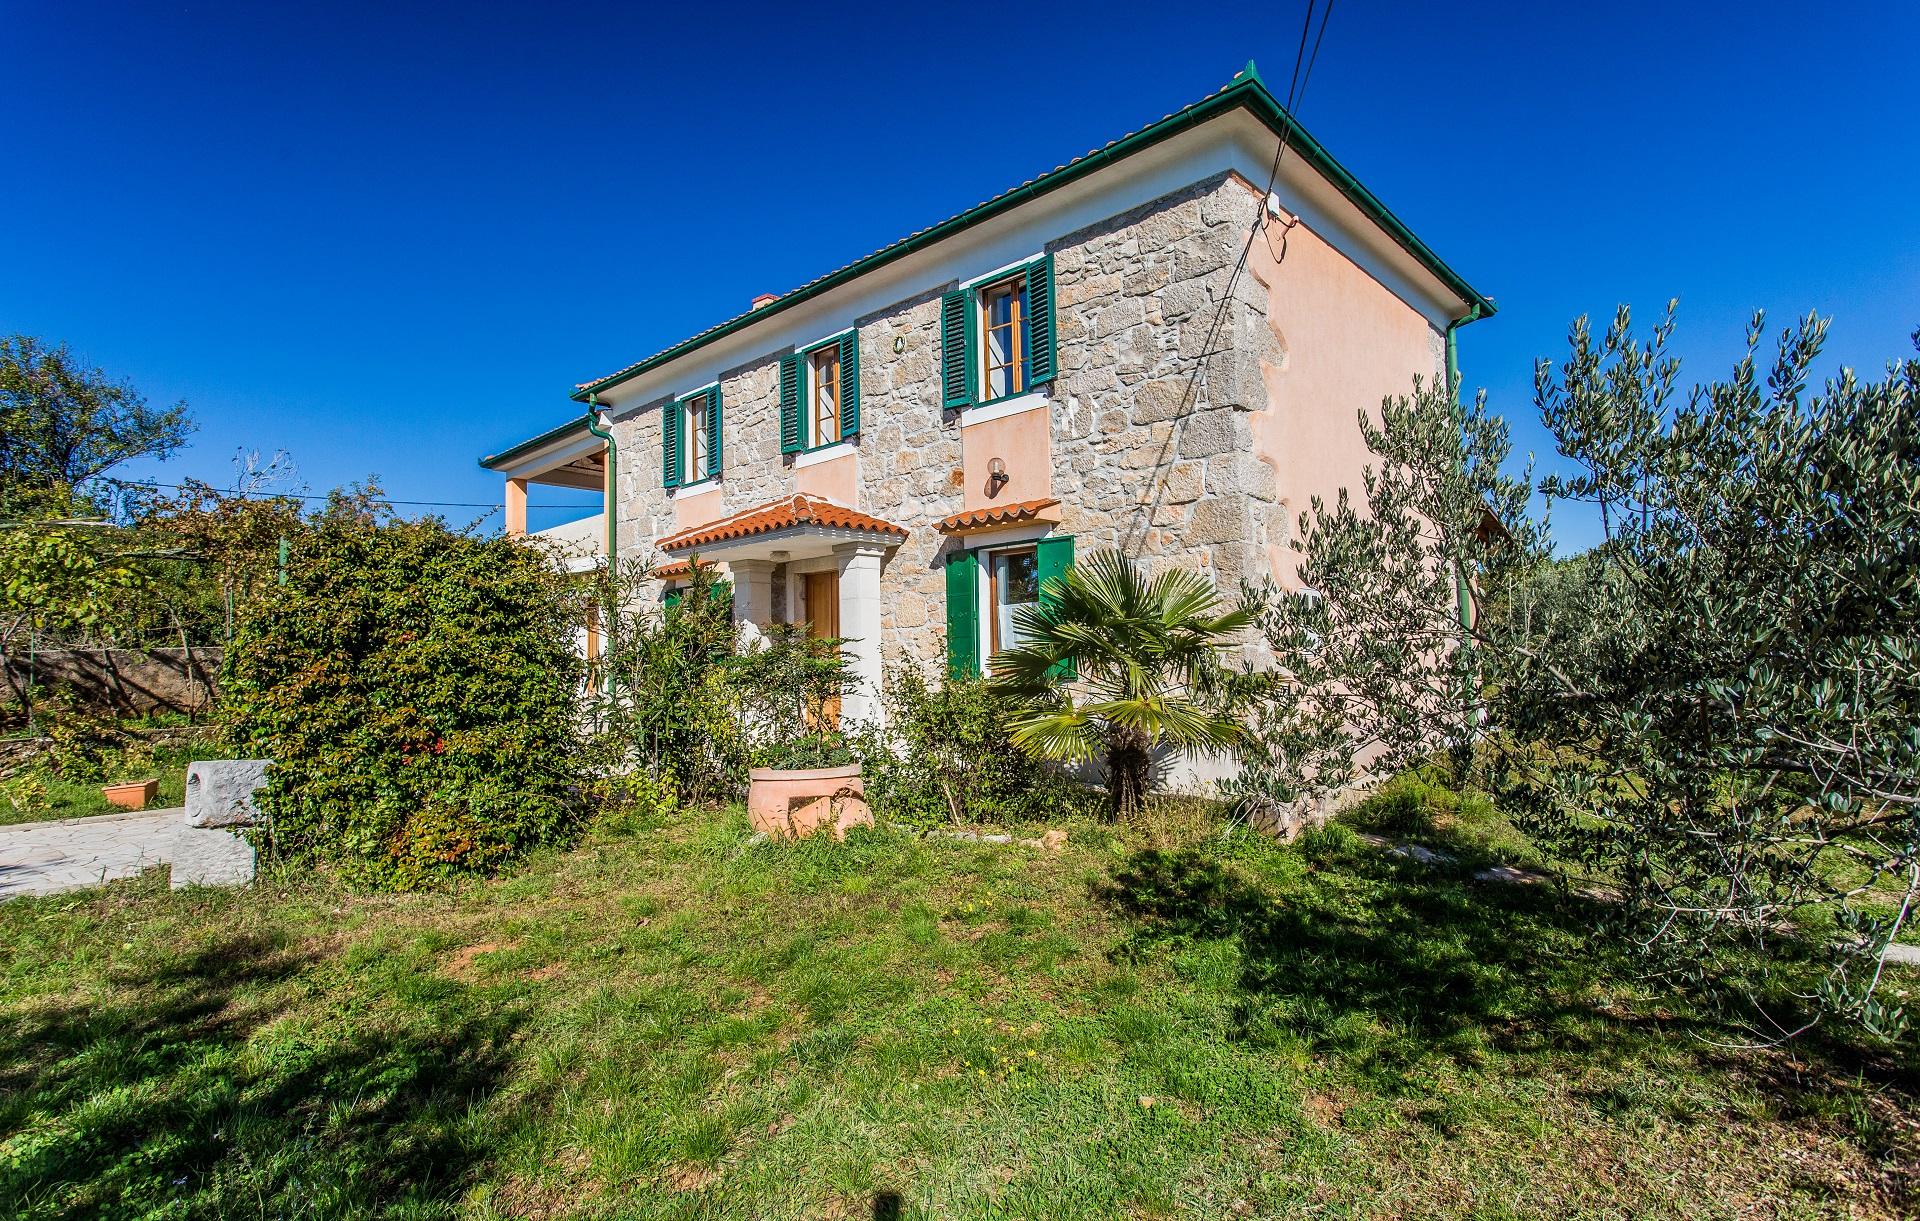 Ferienhaus für 7 Personen ca. 3500 m² in   kroatische Inseln